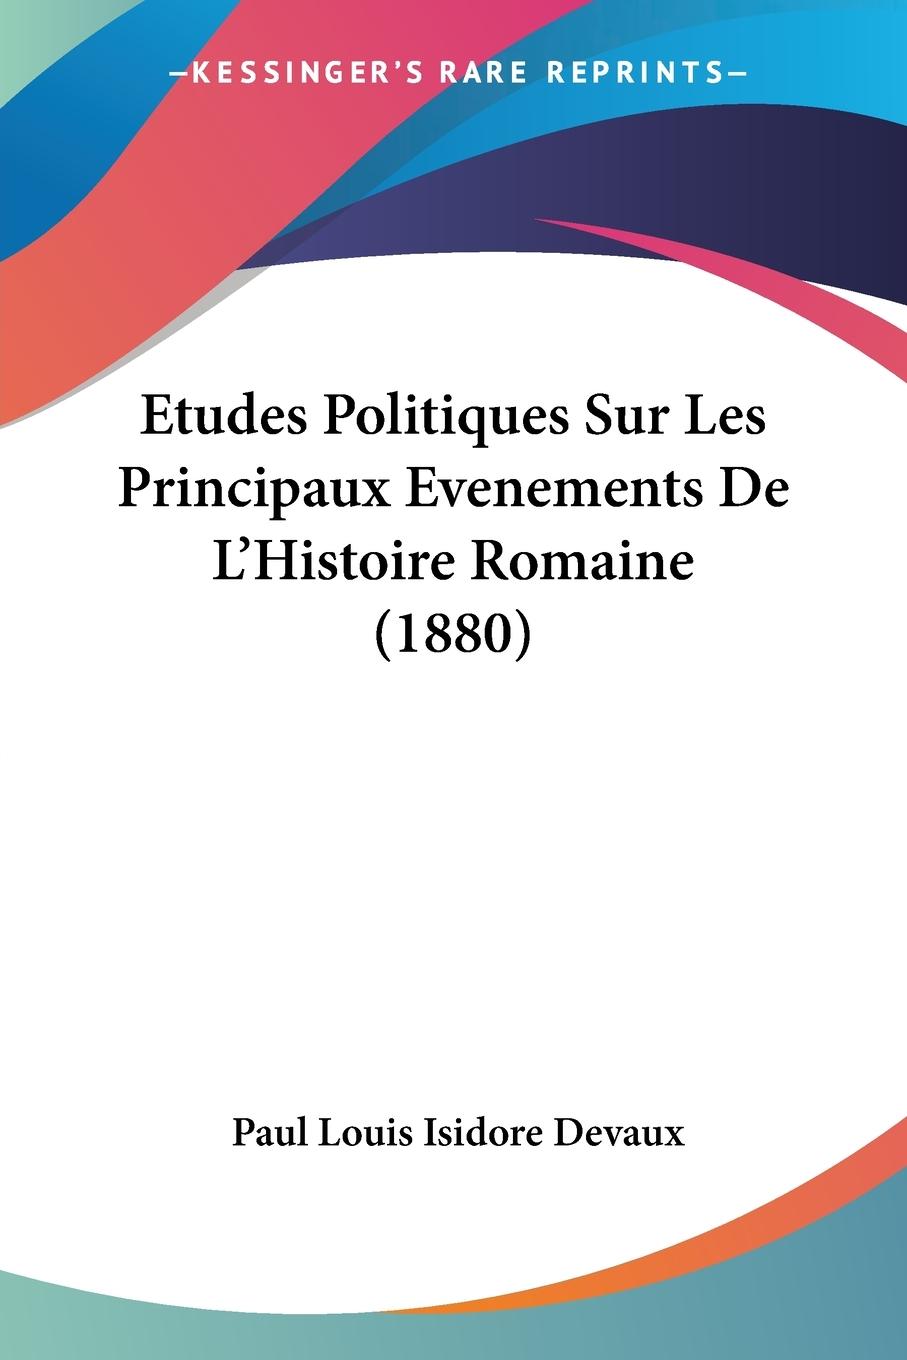 Etudes Politiques Sur Les Principaux Evenements De L Histoire Romaine (1880) - Devaux, Paul Louis Isidore